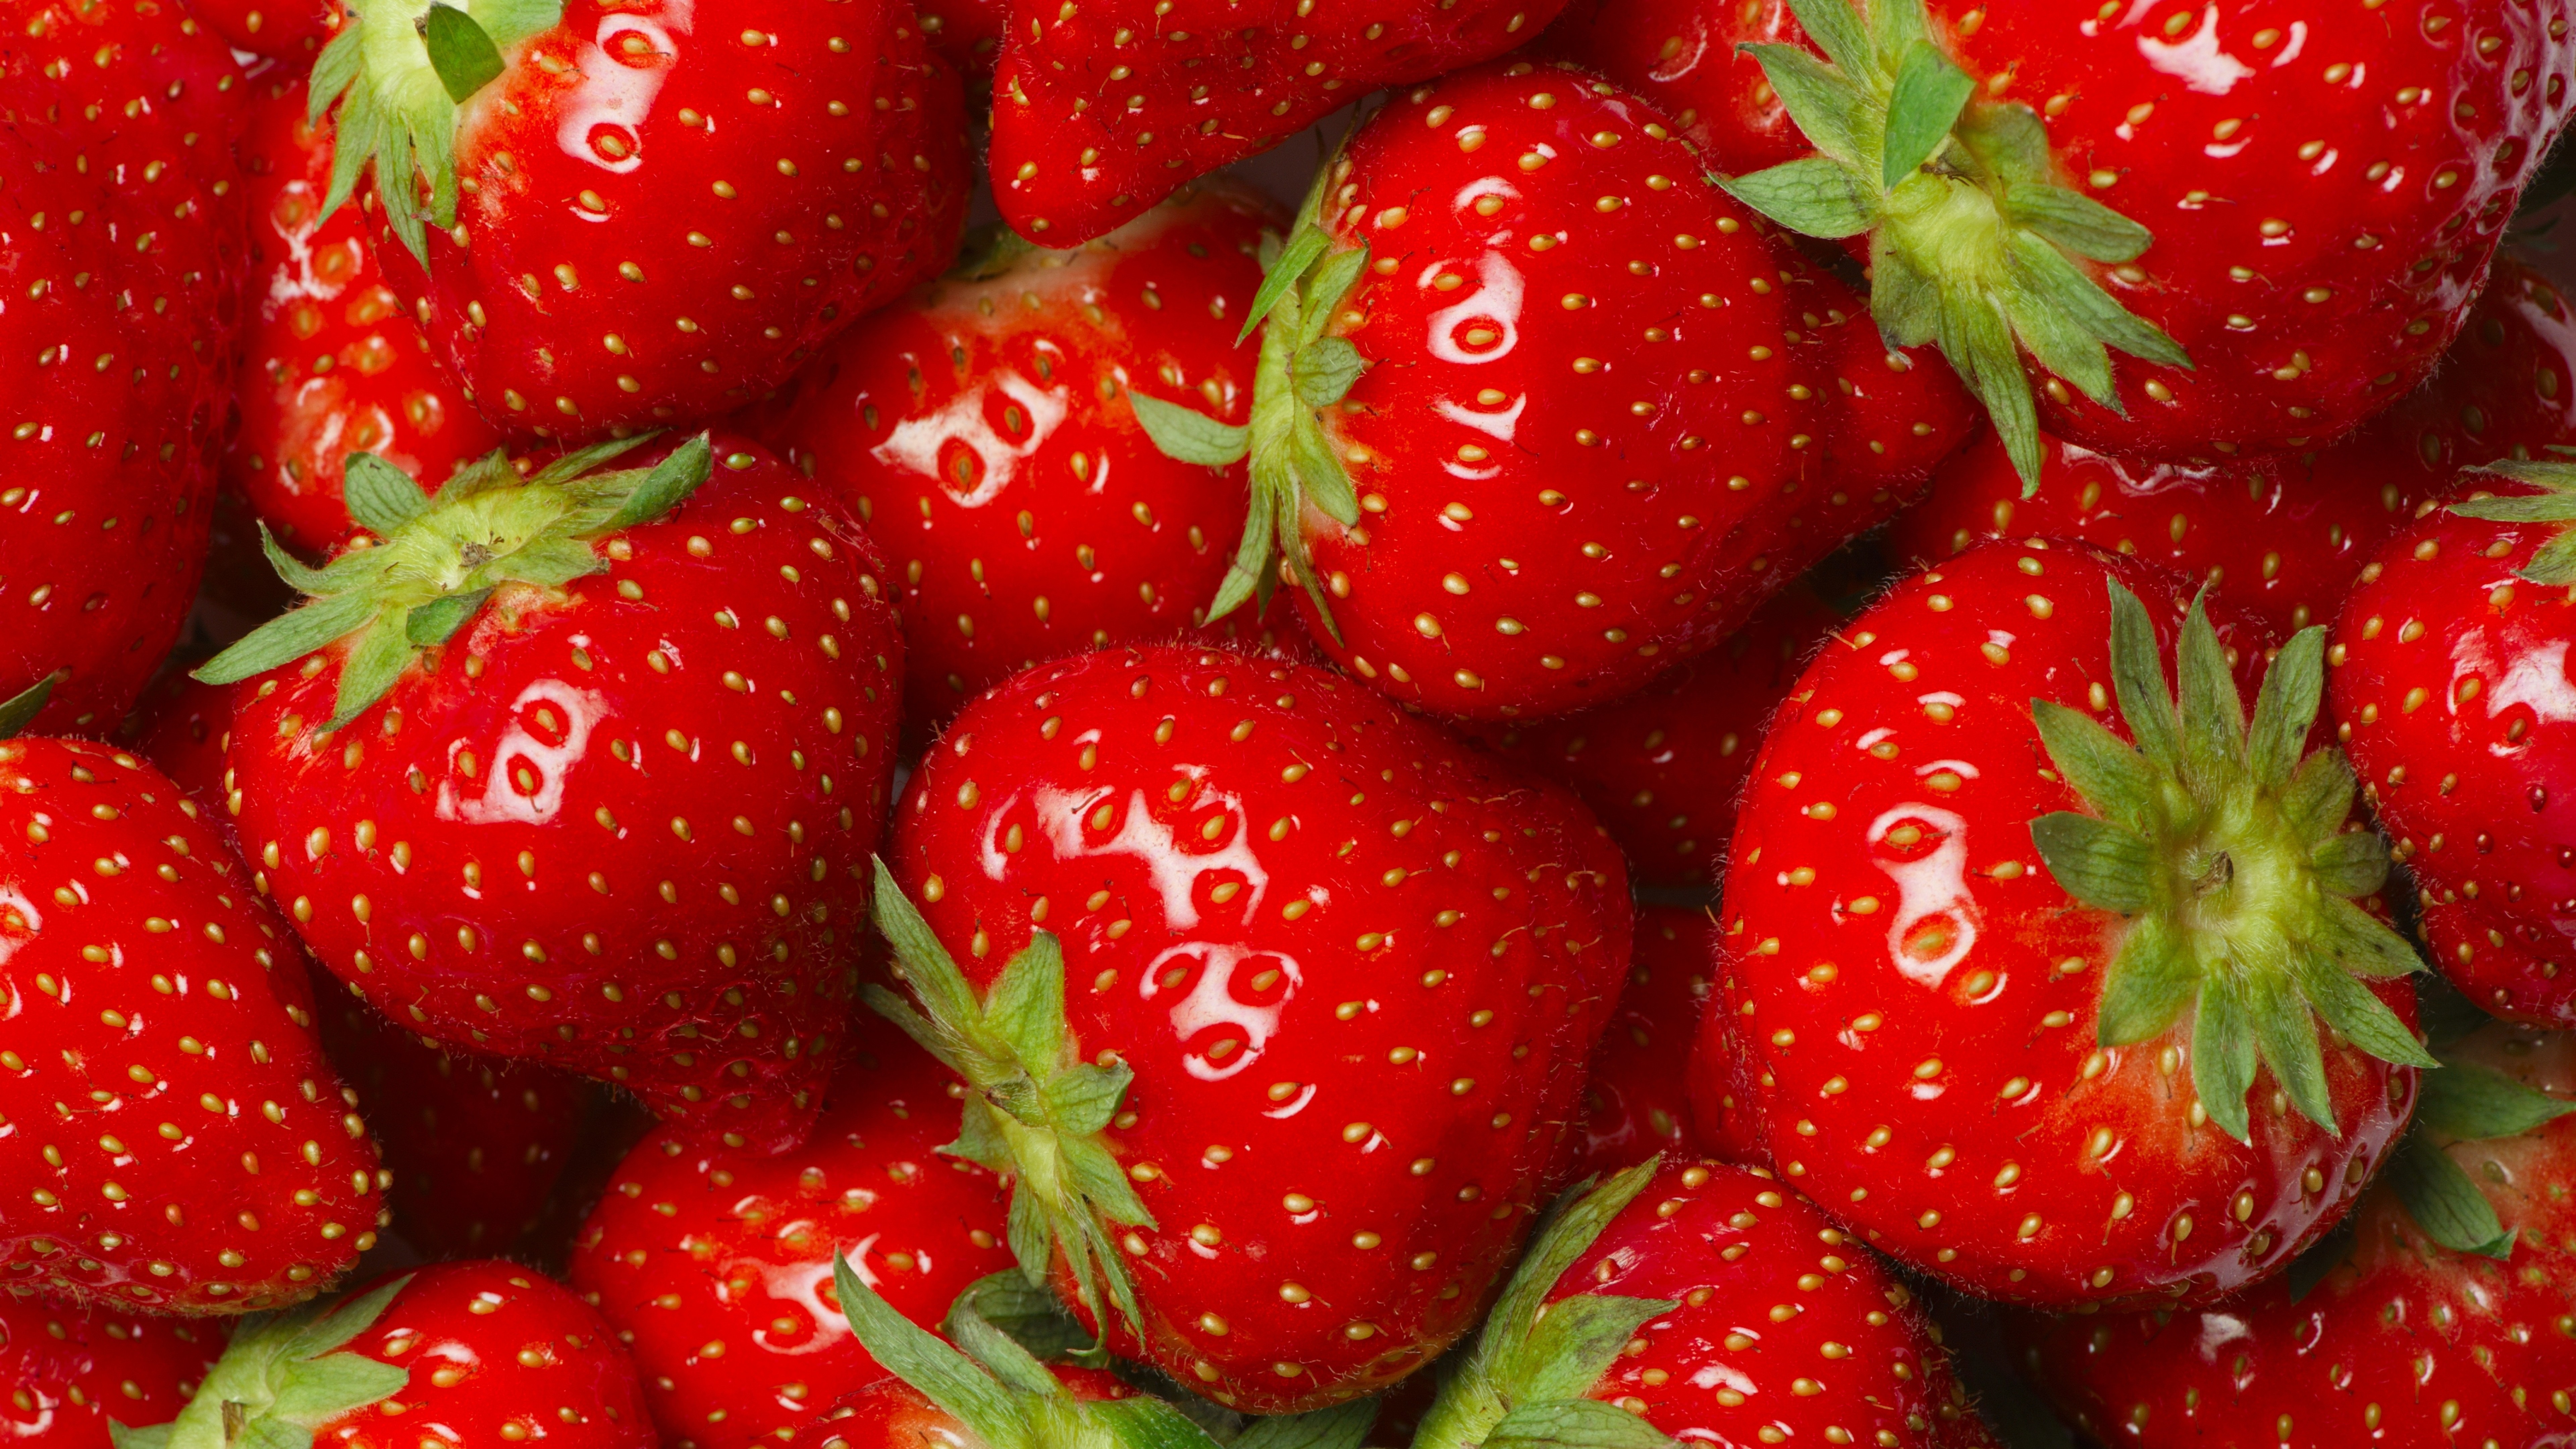 鲜嫩的草莓5120x3200分辨率下载,鲜嫩的草莓,高清图片,壁纸,美食